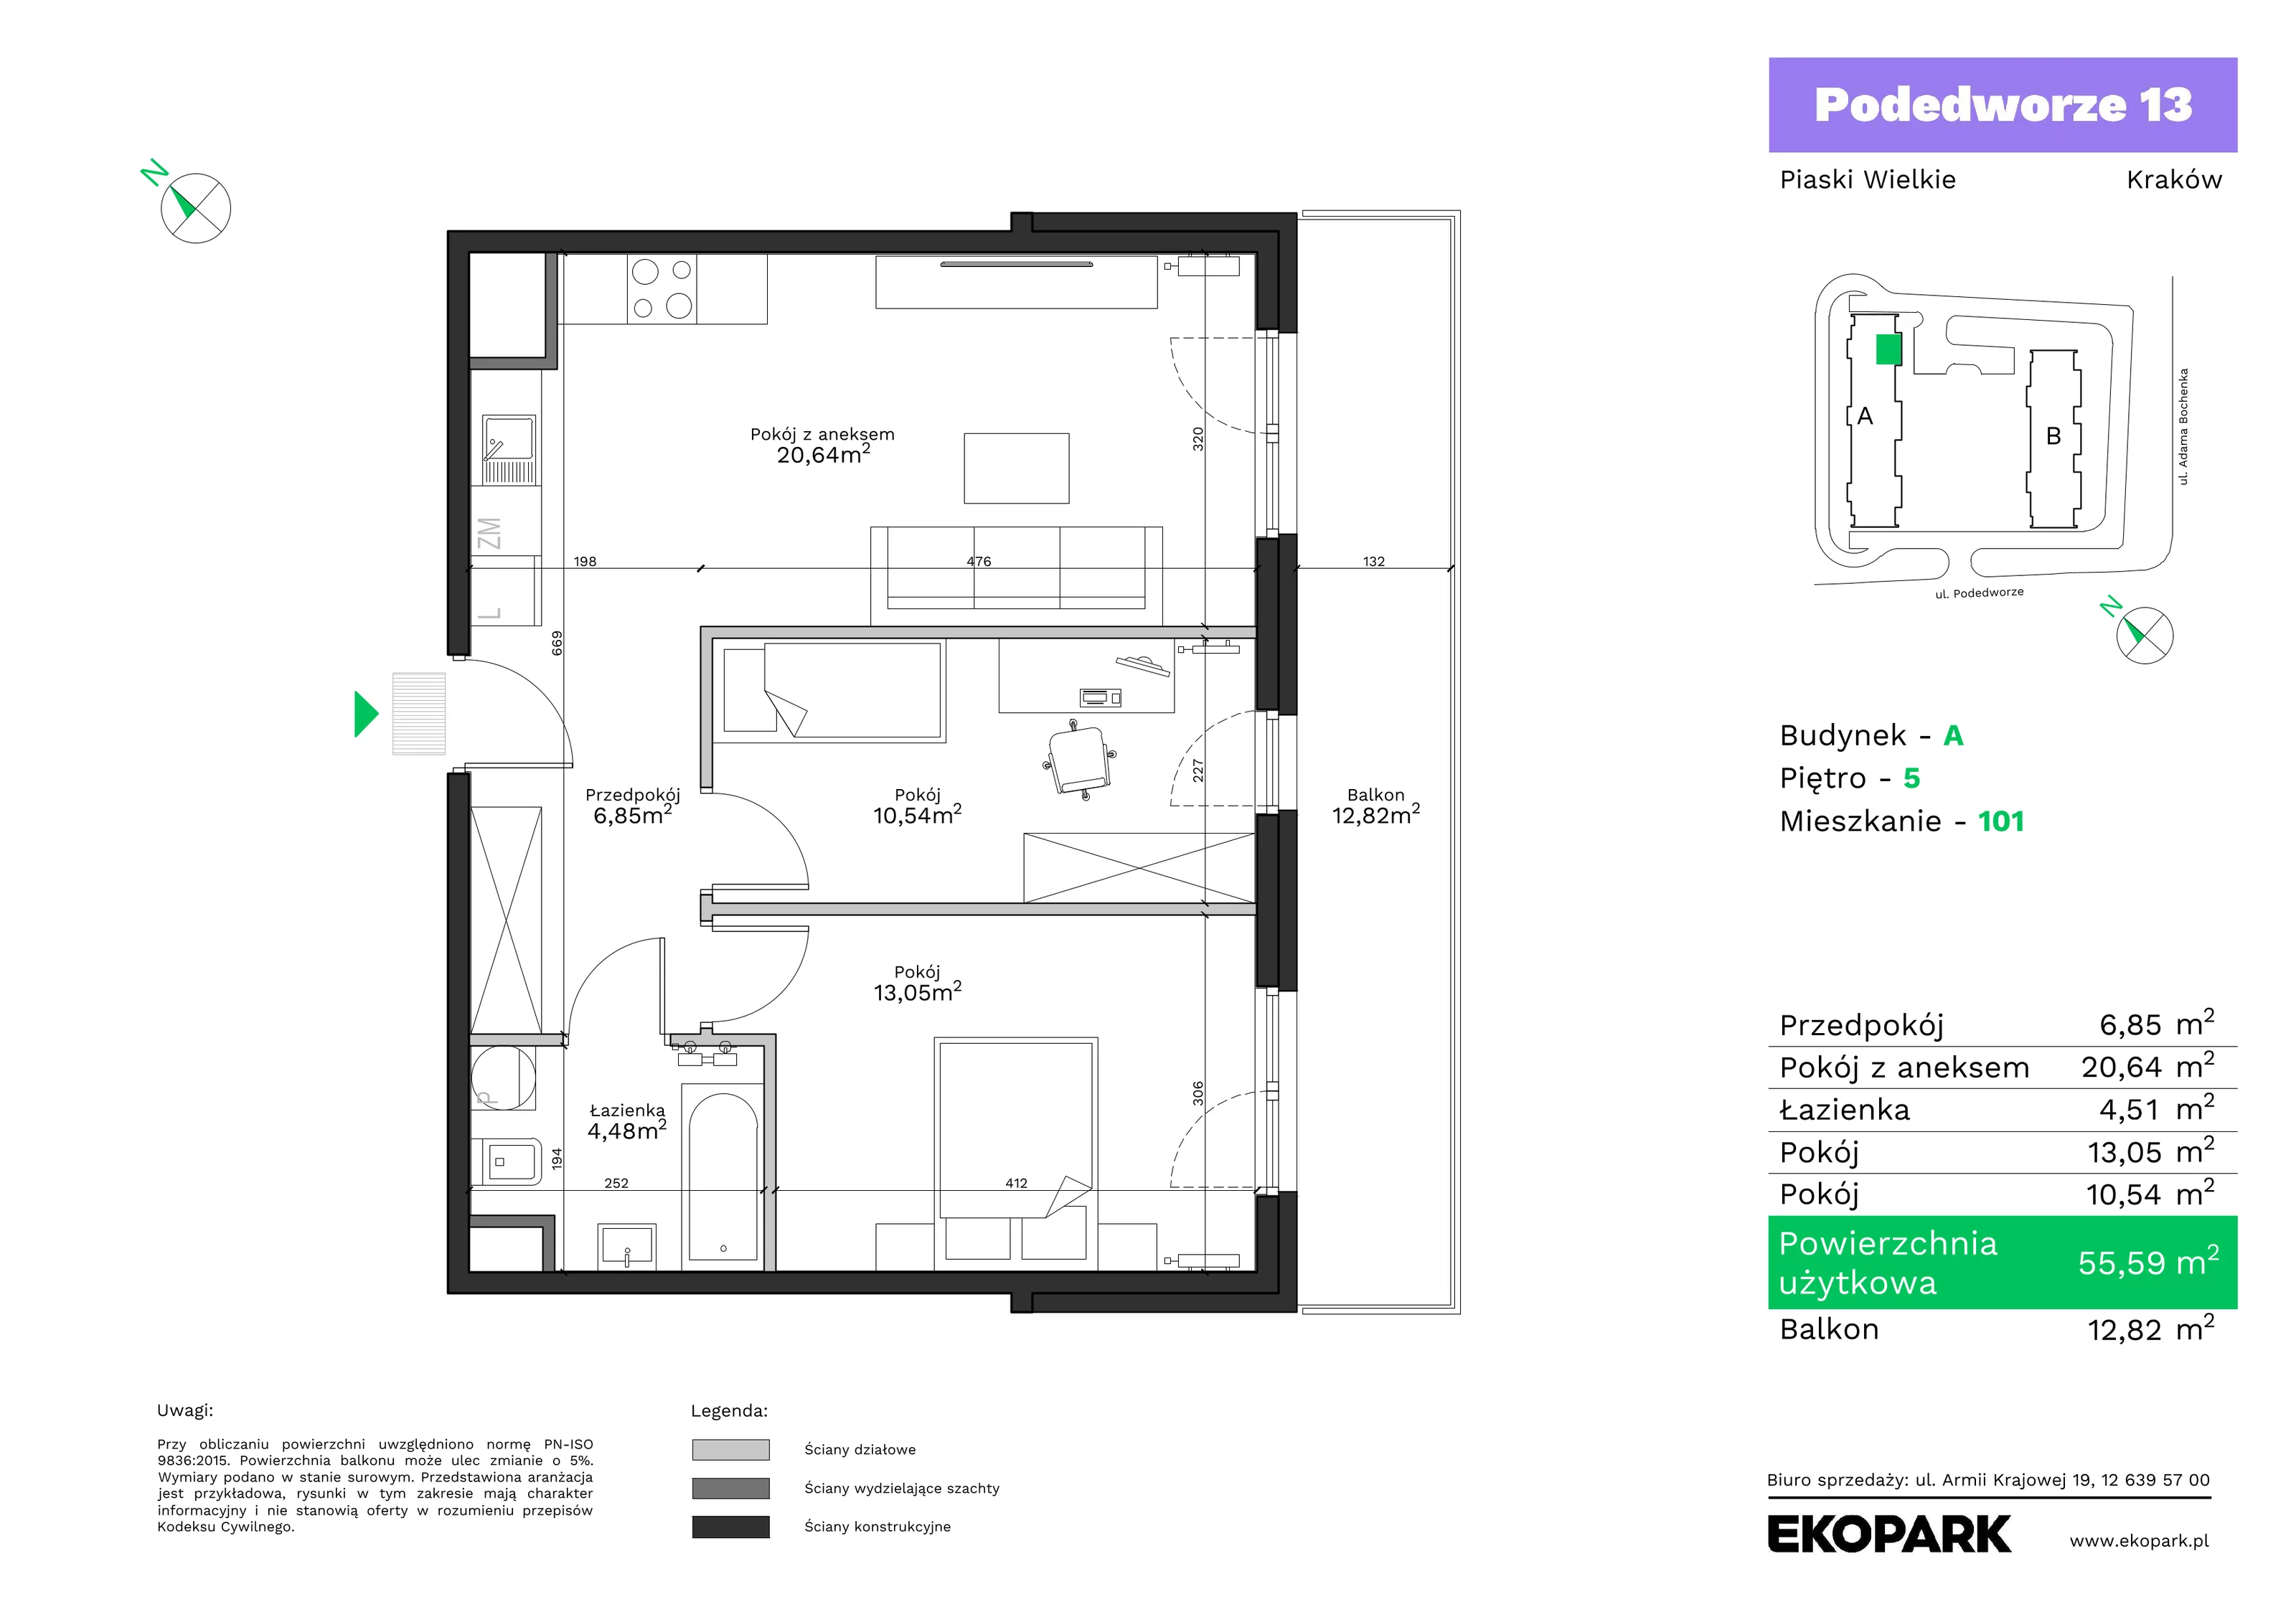 Mieszkanie 55,59 m², piętro 5, oferta nr A101, Podedworze 13, Kraków, Podgórze Duchackie, Piaski Wielkie, ul. Podedworze 13